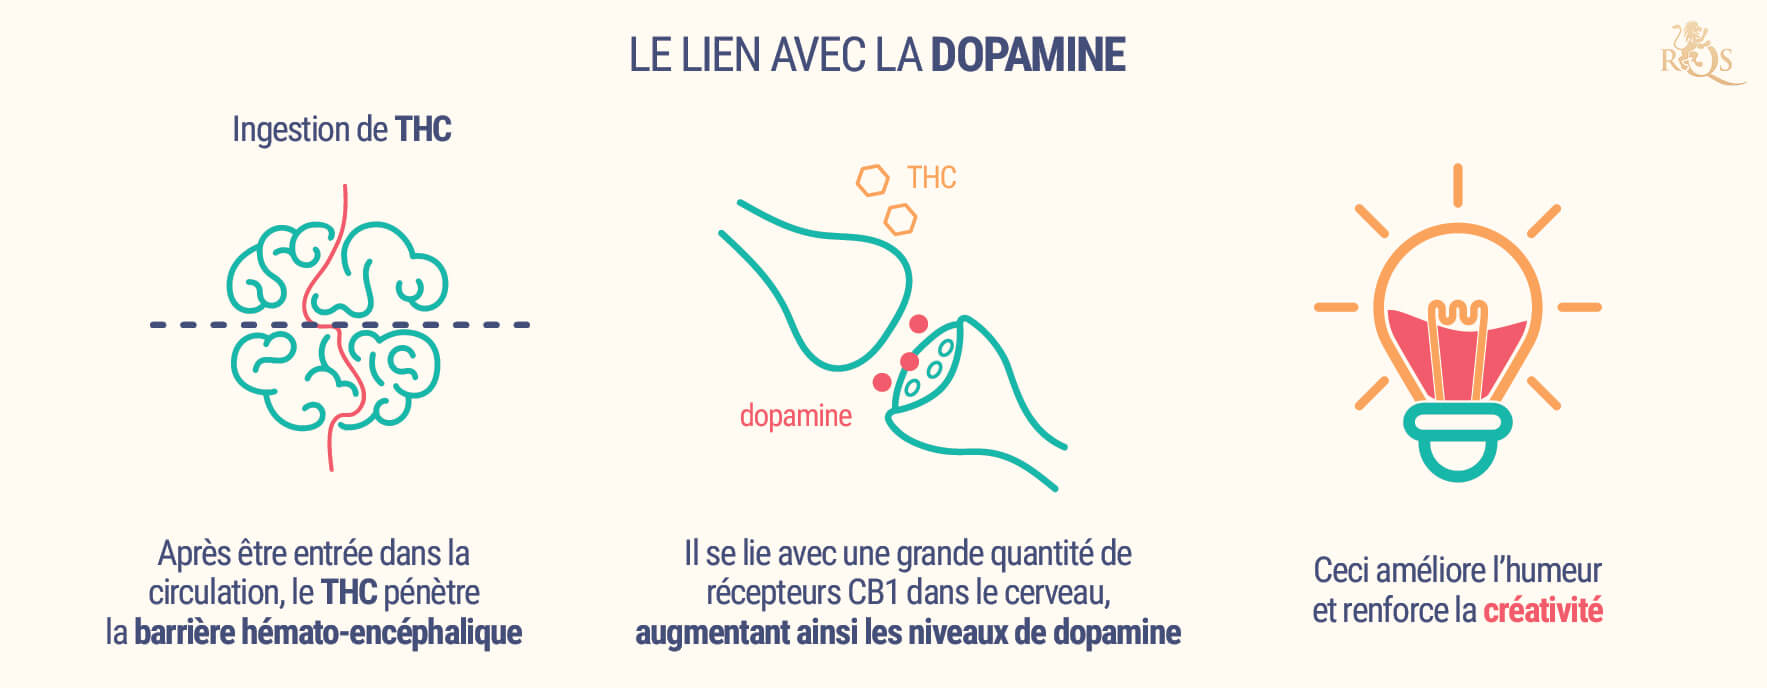 Le Lien Avec La Dopamine